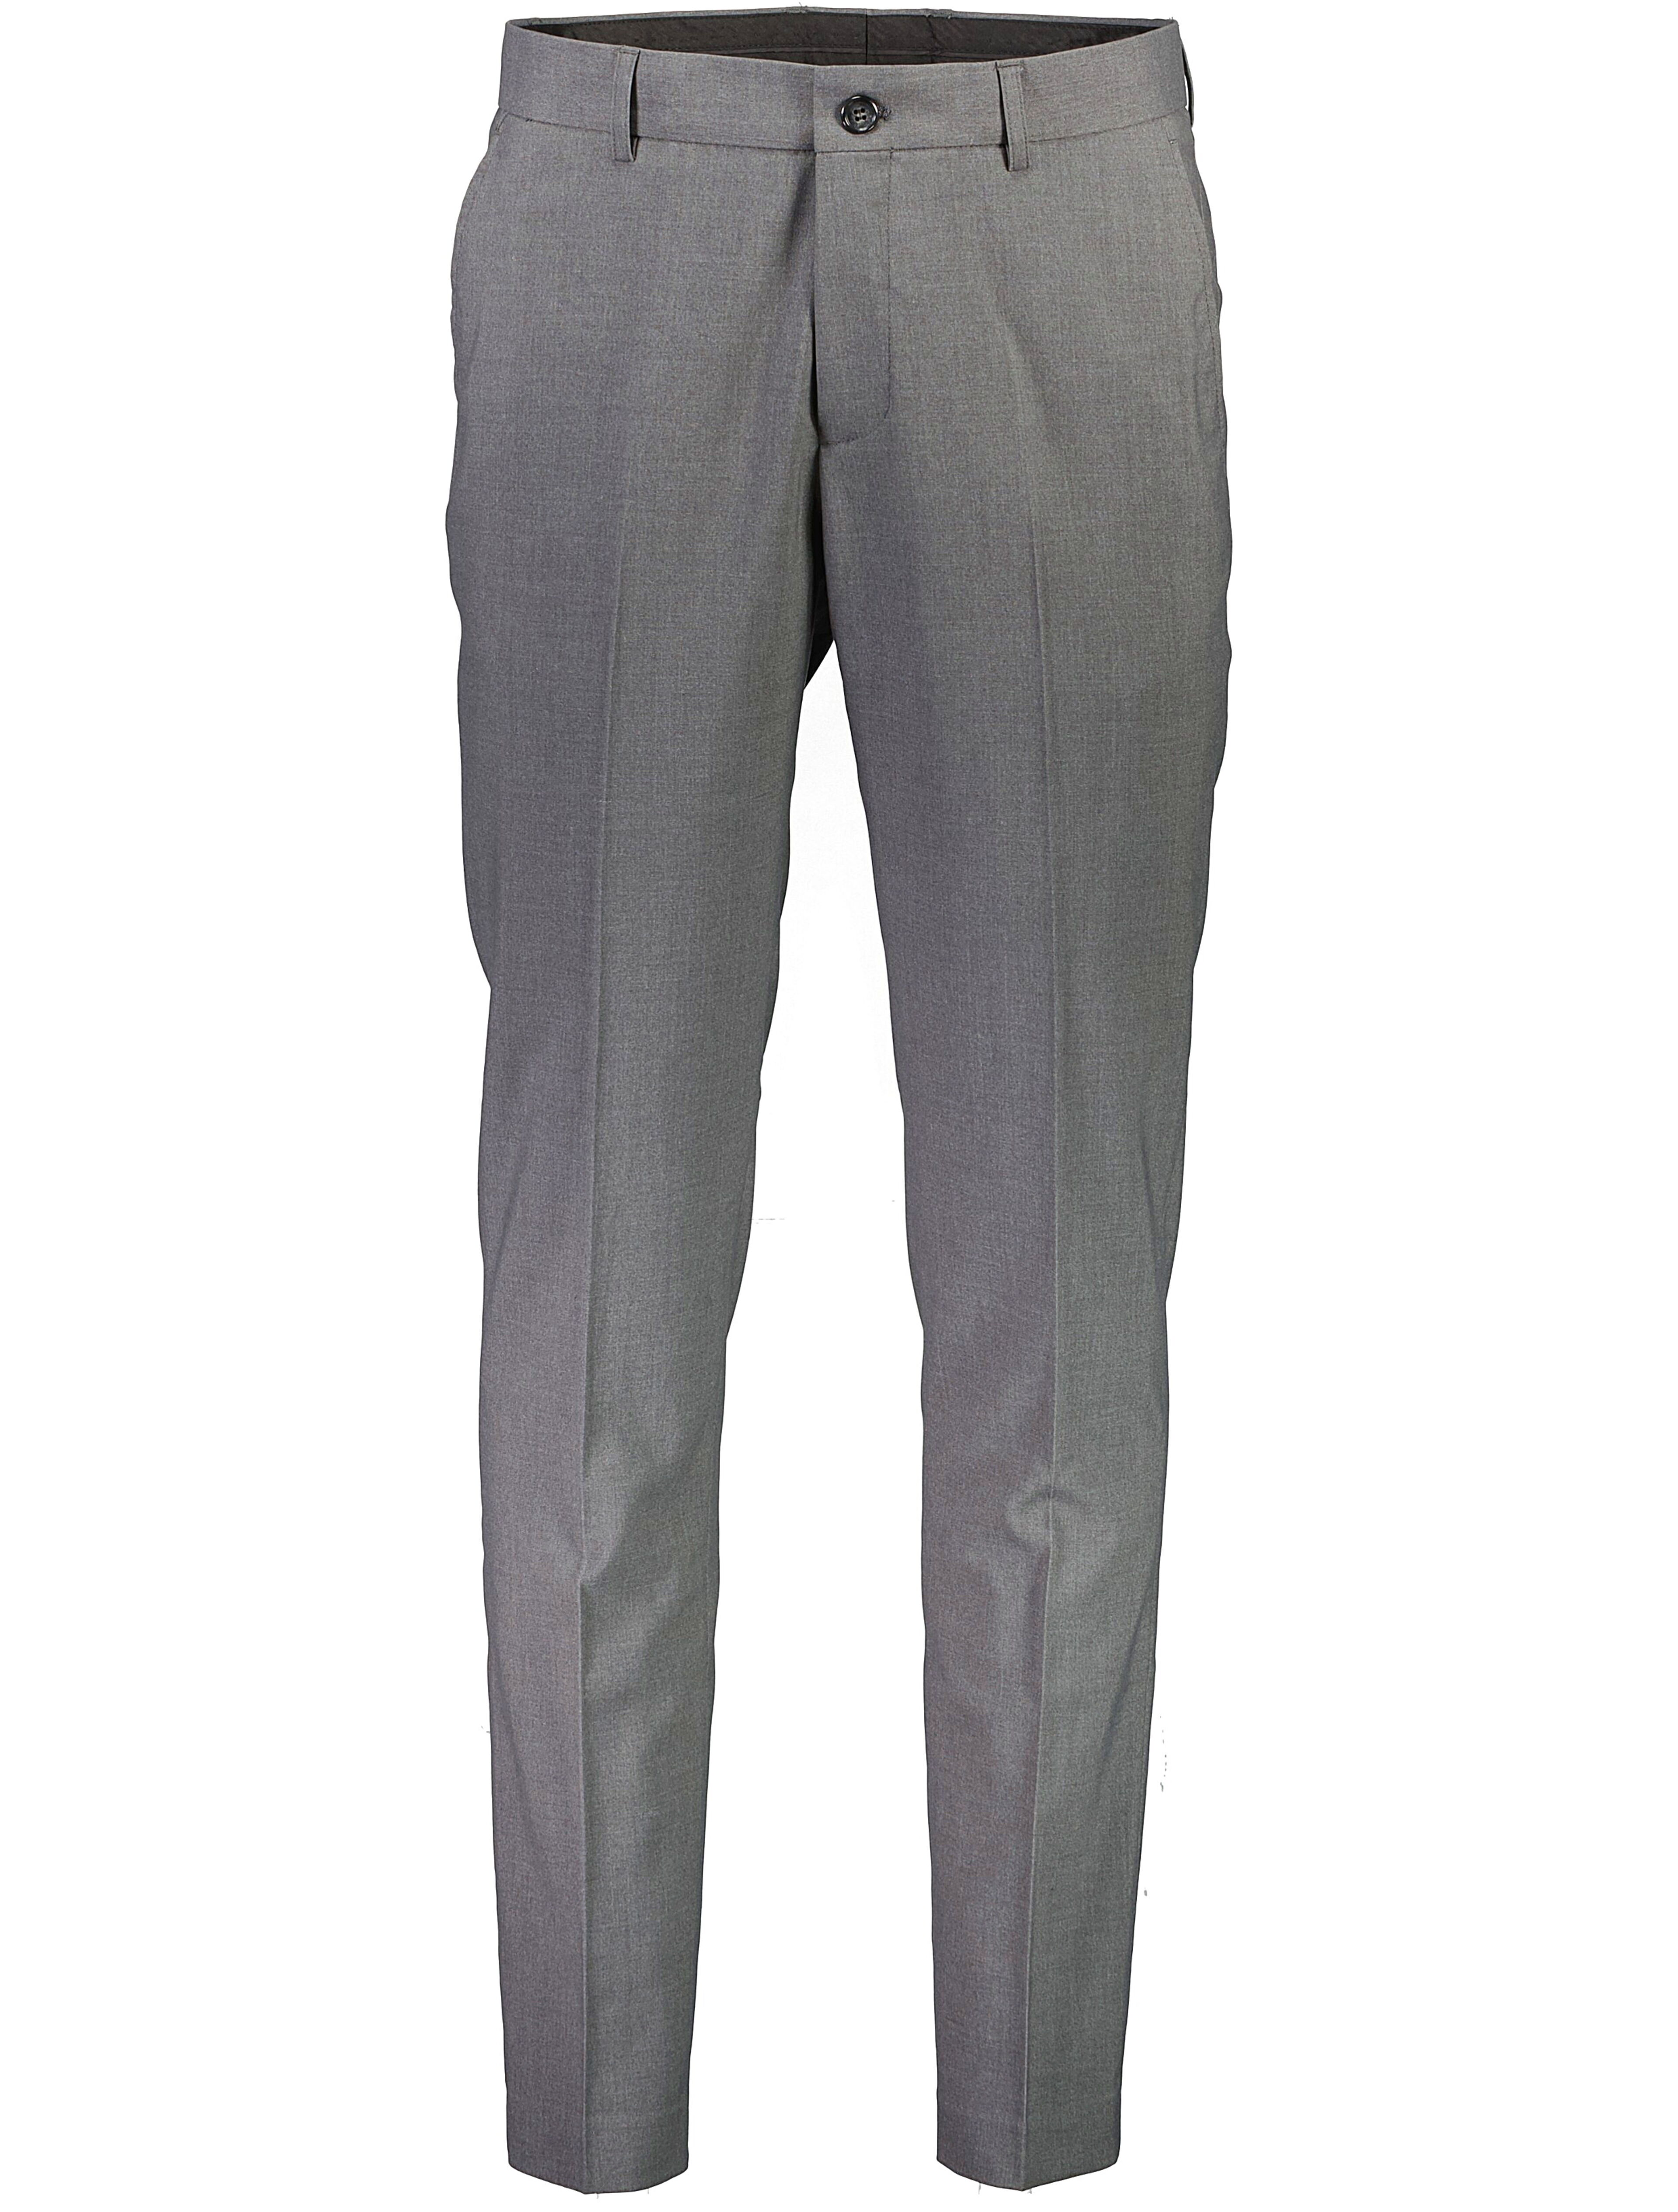 Suit | Slim fit 30-61040